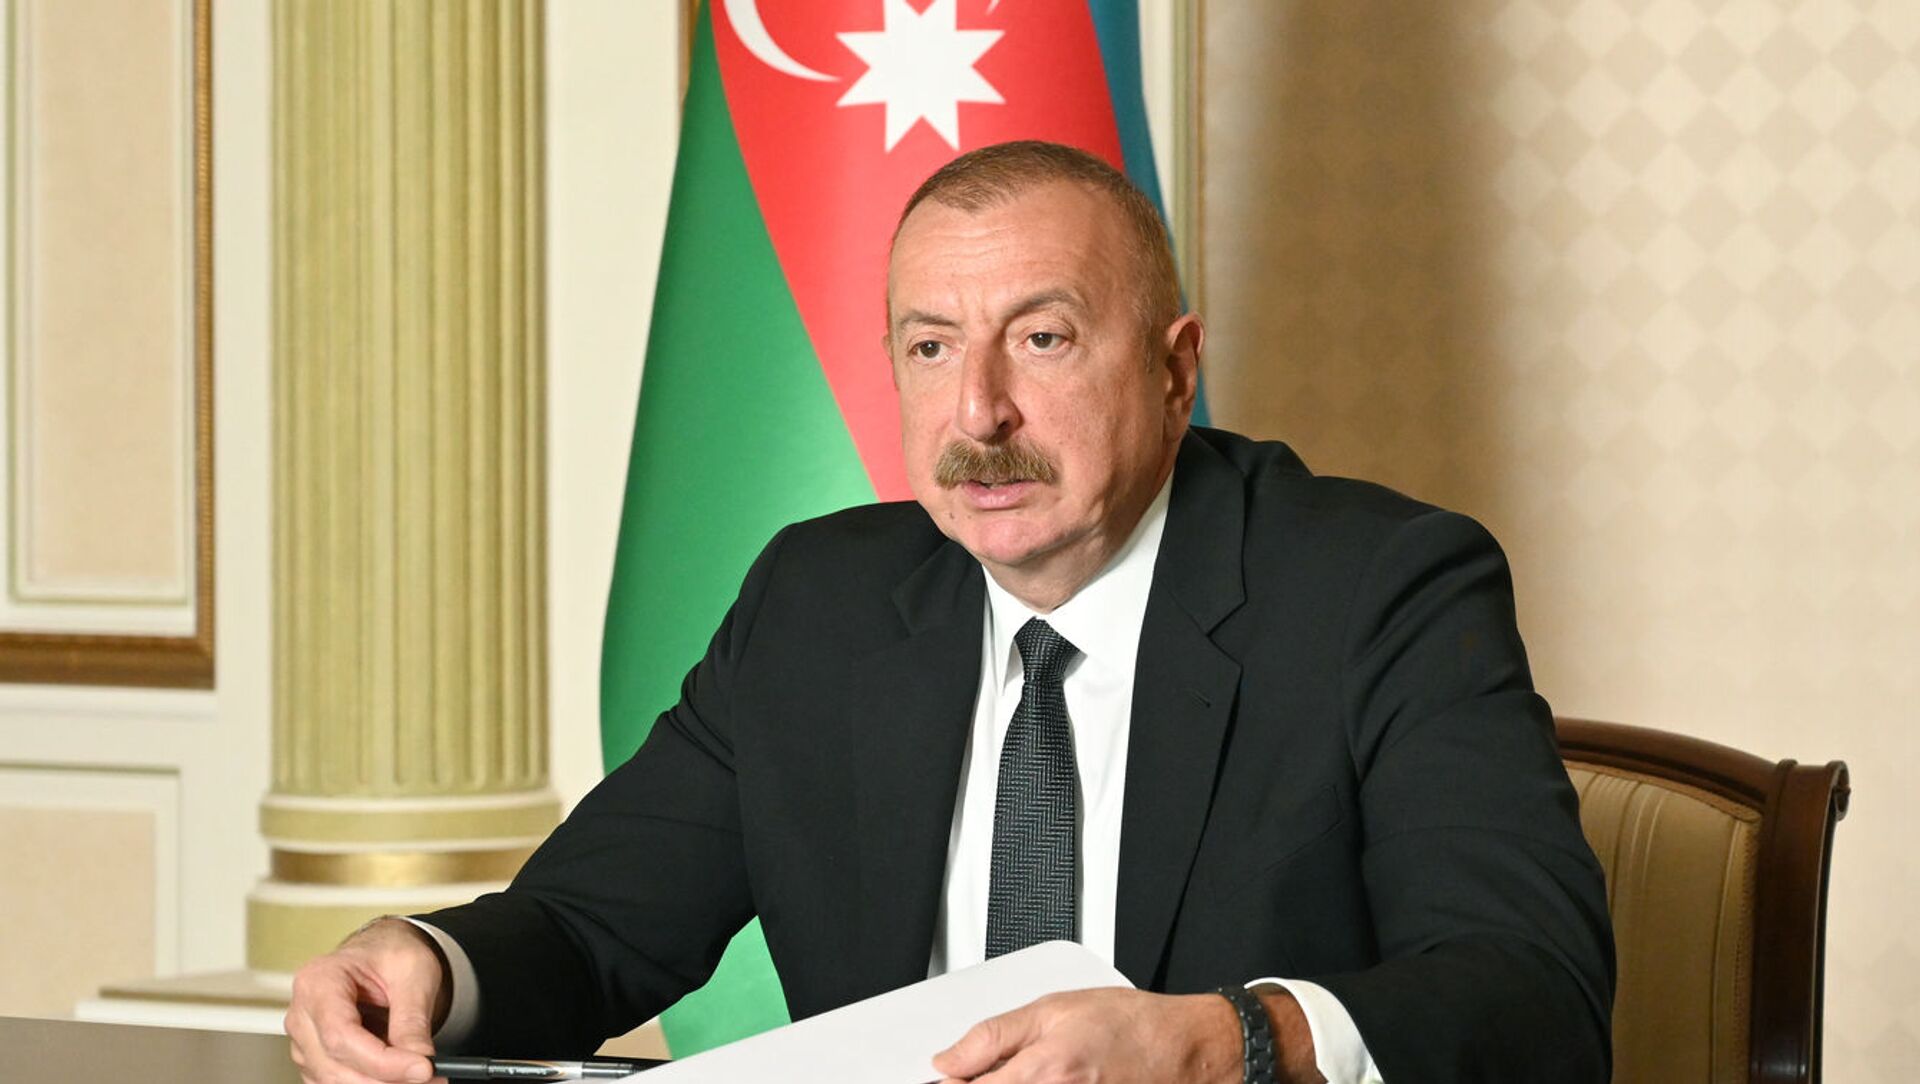 Состоялась встреча президента Ильхама Алиева с генеральным директором Всемирной организации здравоохранения в формате видеоконференции - Sputnik Азербайджан, 1920, 01.04.2021